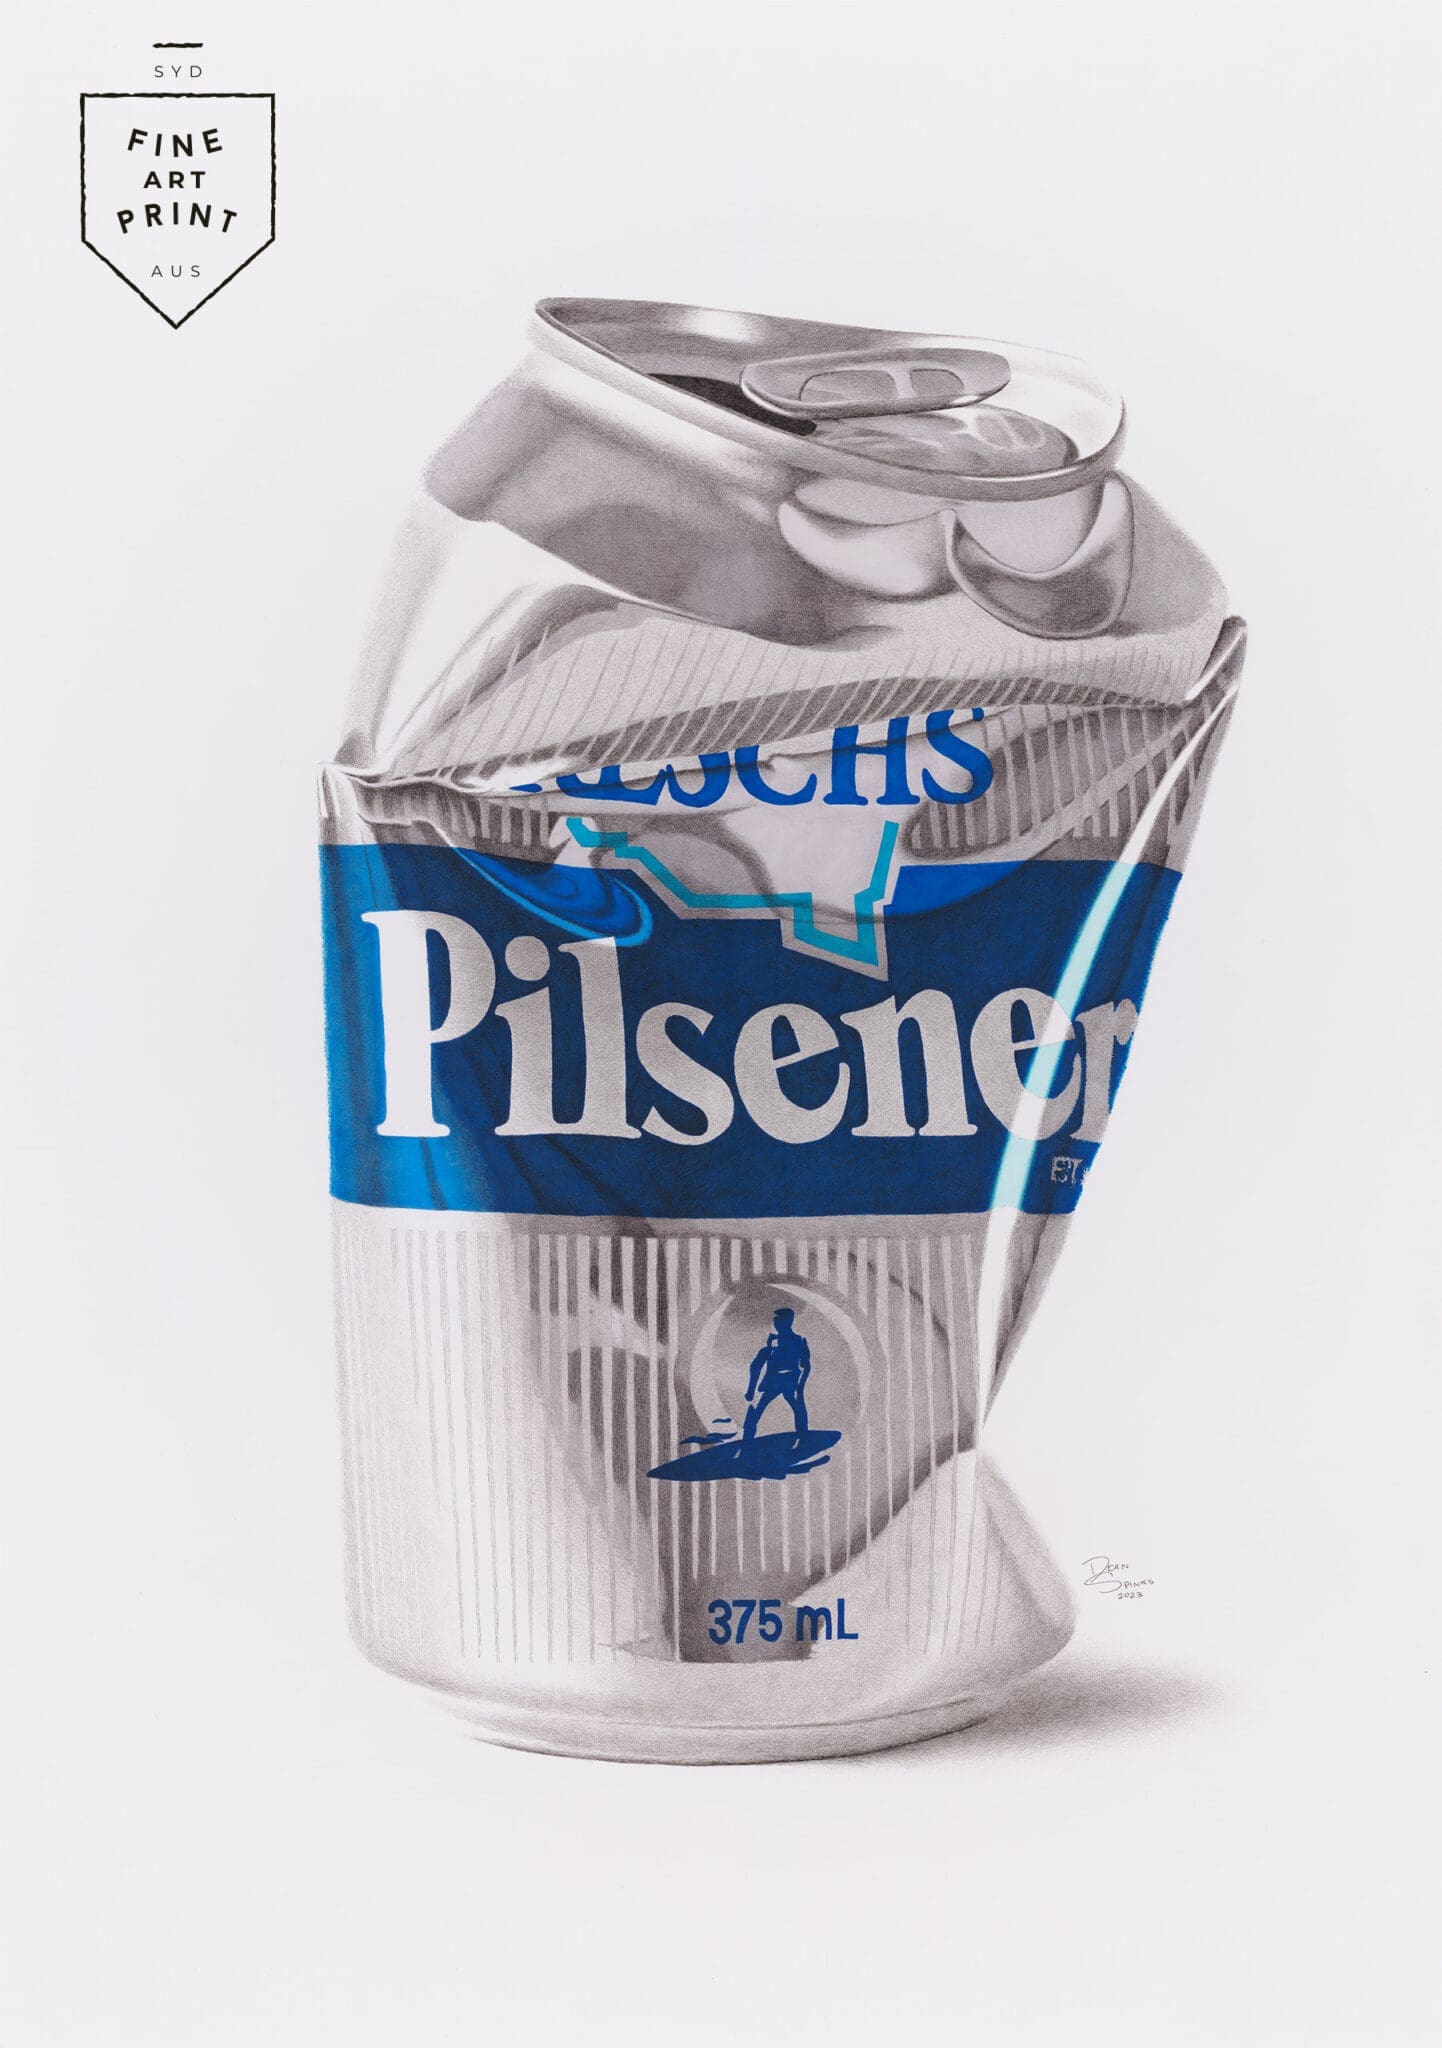 Fine art print of Reschs Pilsener beer can artwork